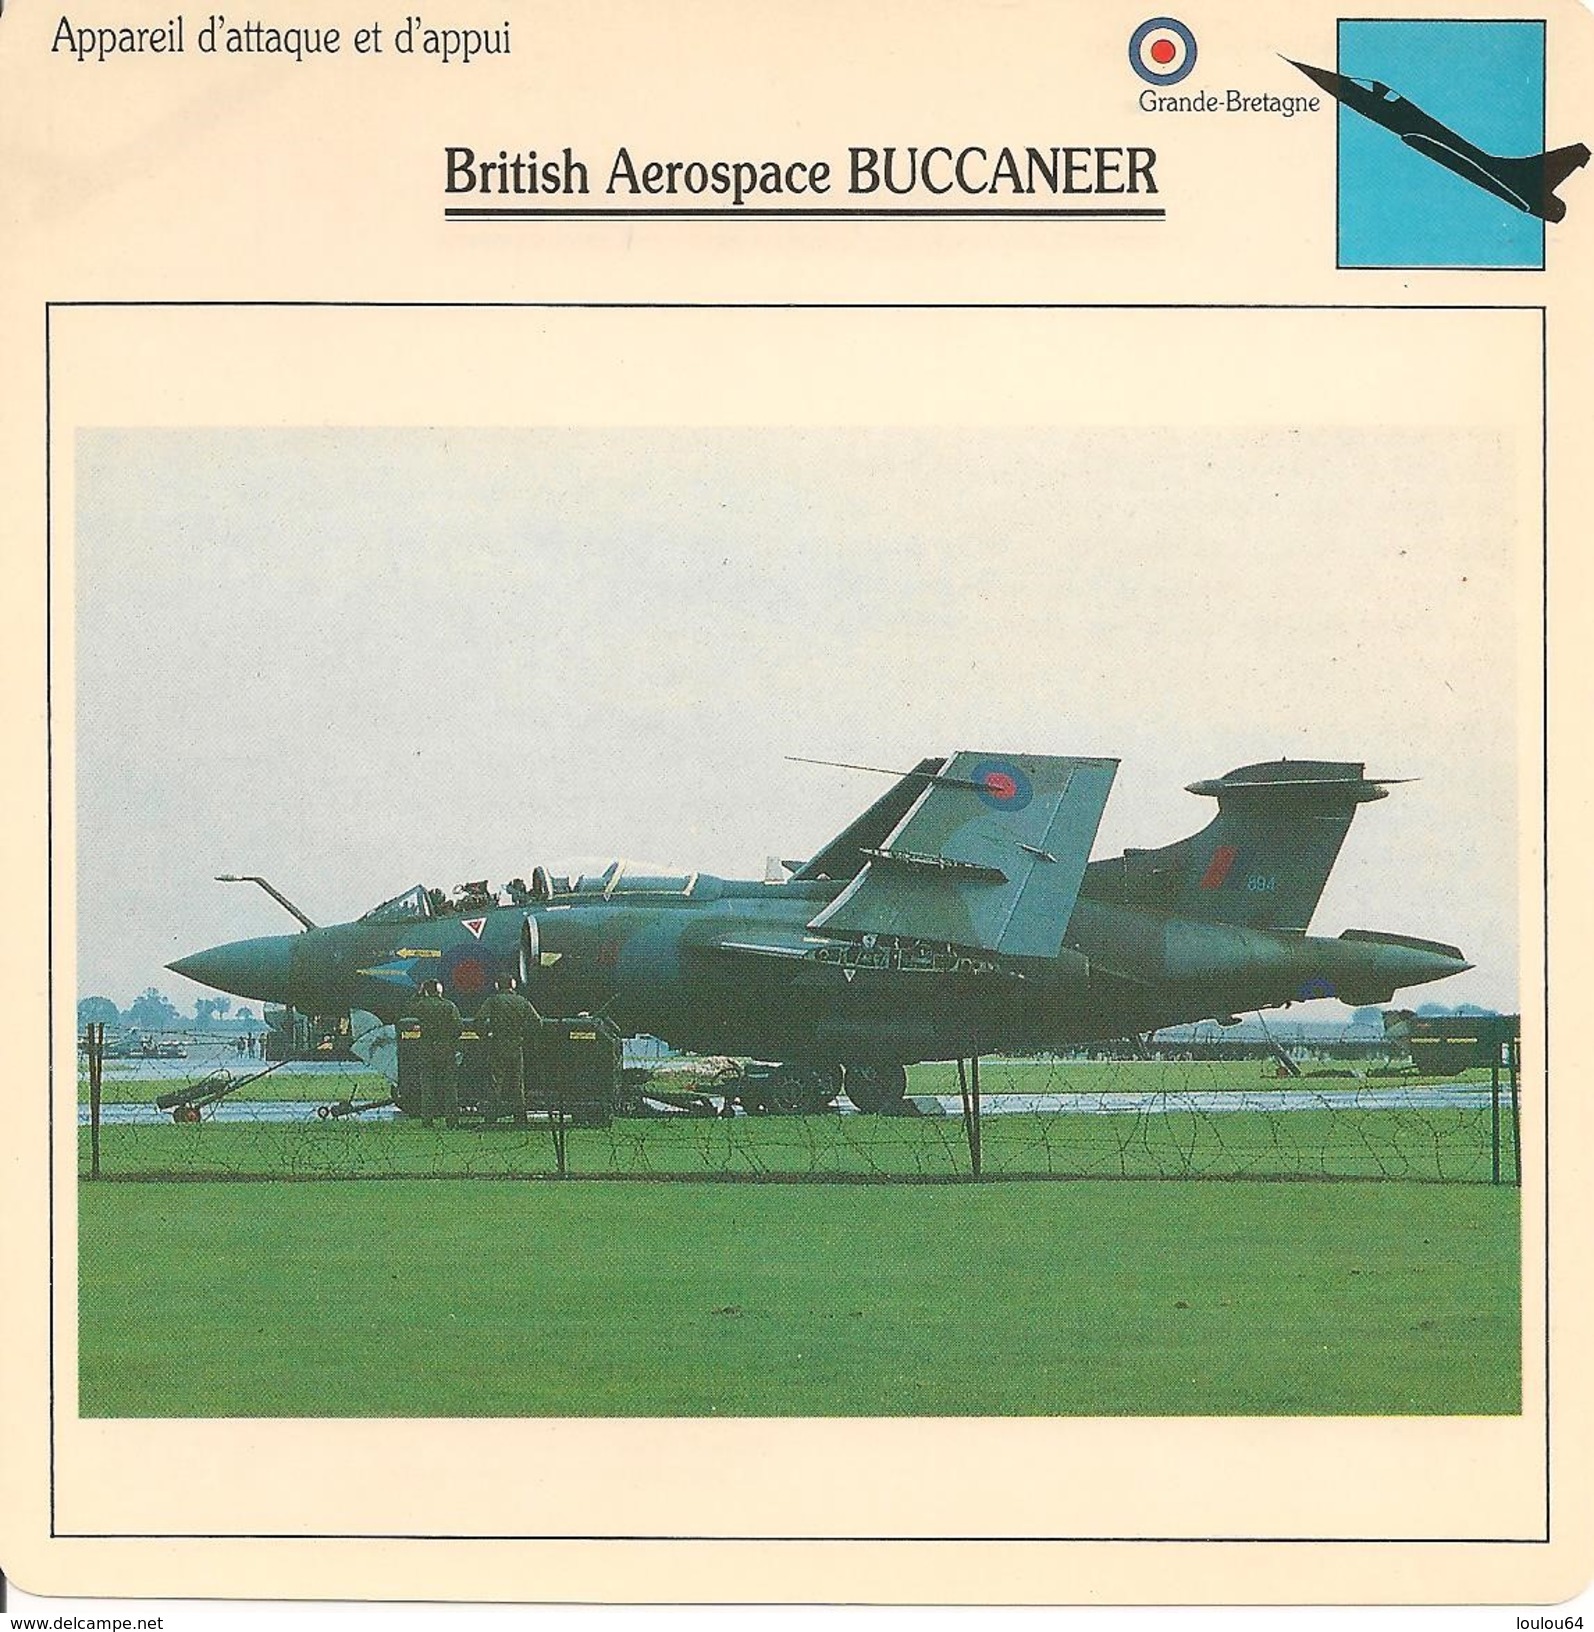 Fiches Illustrées - Caractéristiques Avions - Appareil D'attaque - British Aerospace BUCCANEER - Grande Bretagne - (39) - Aviation